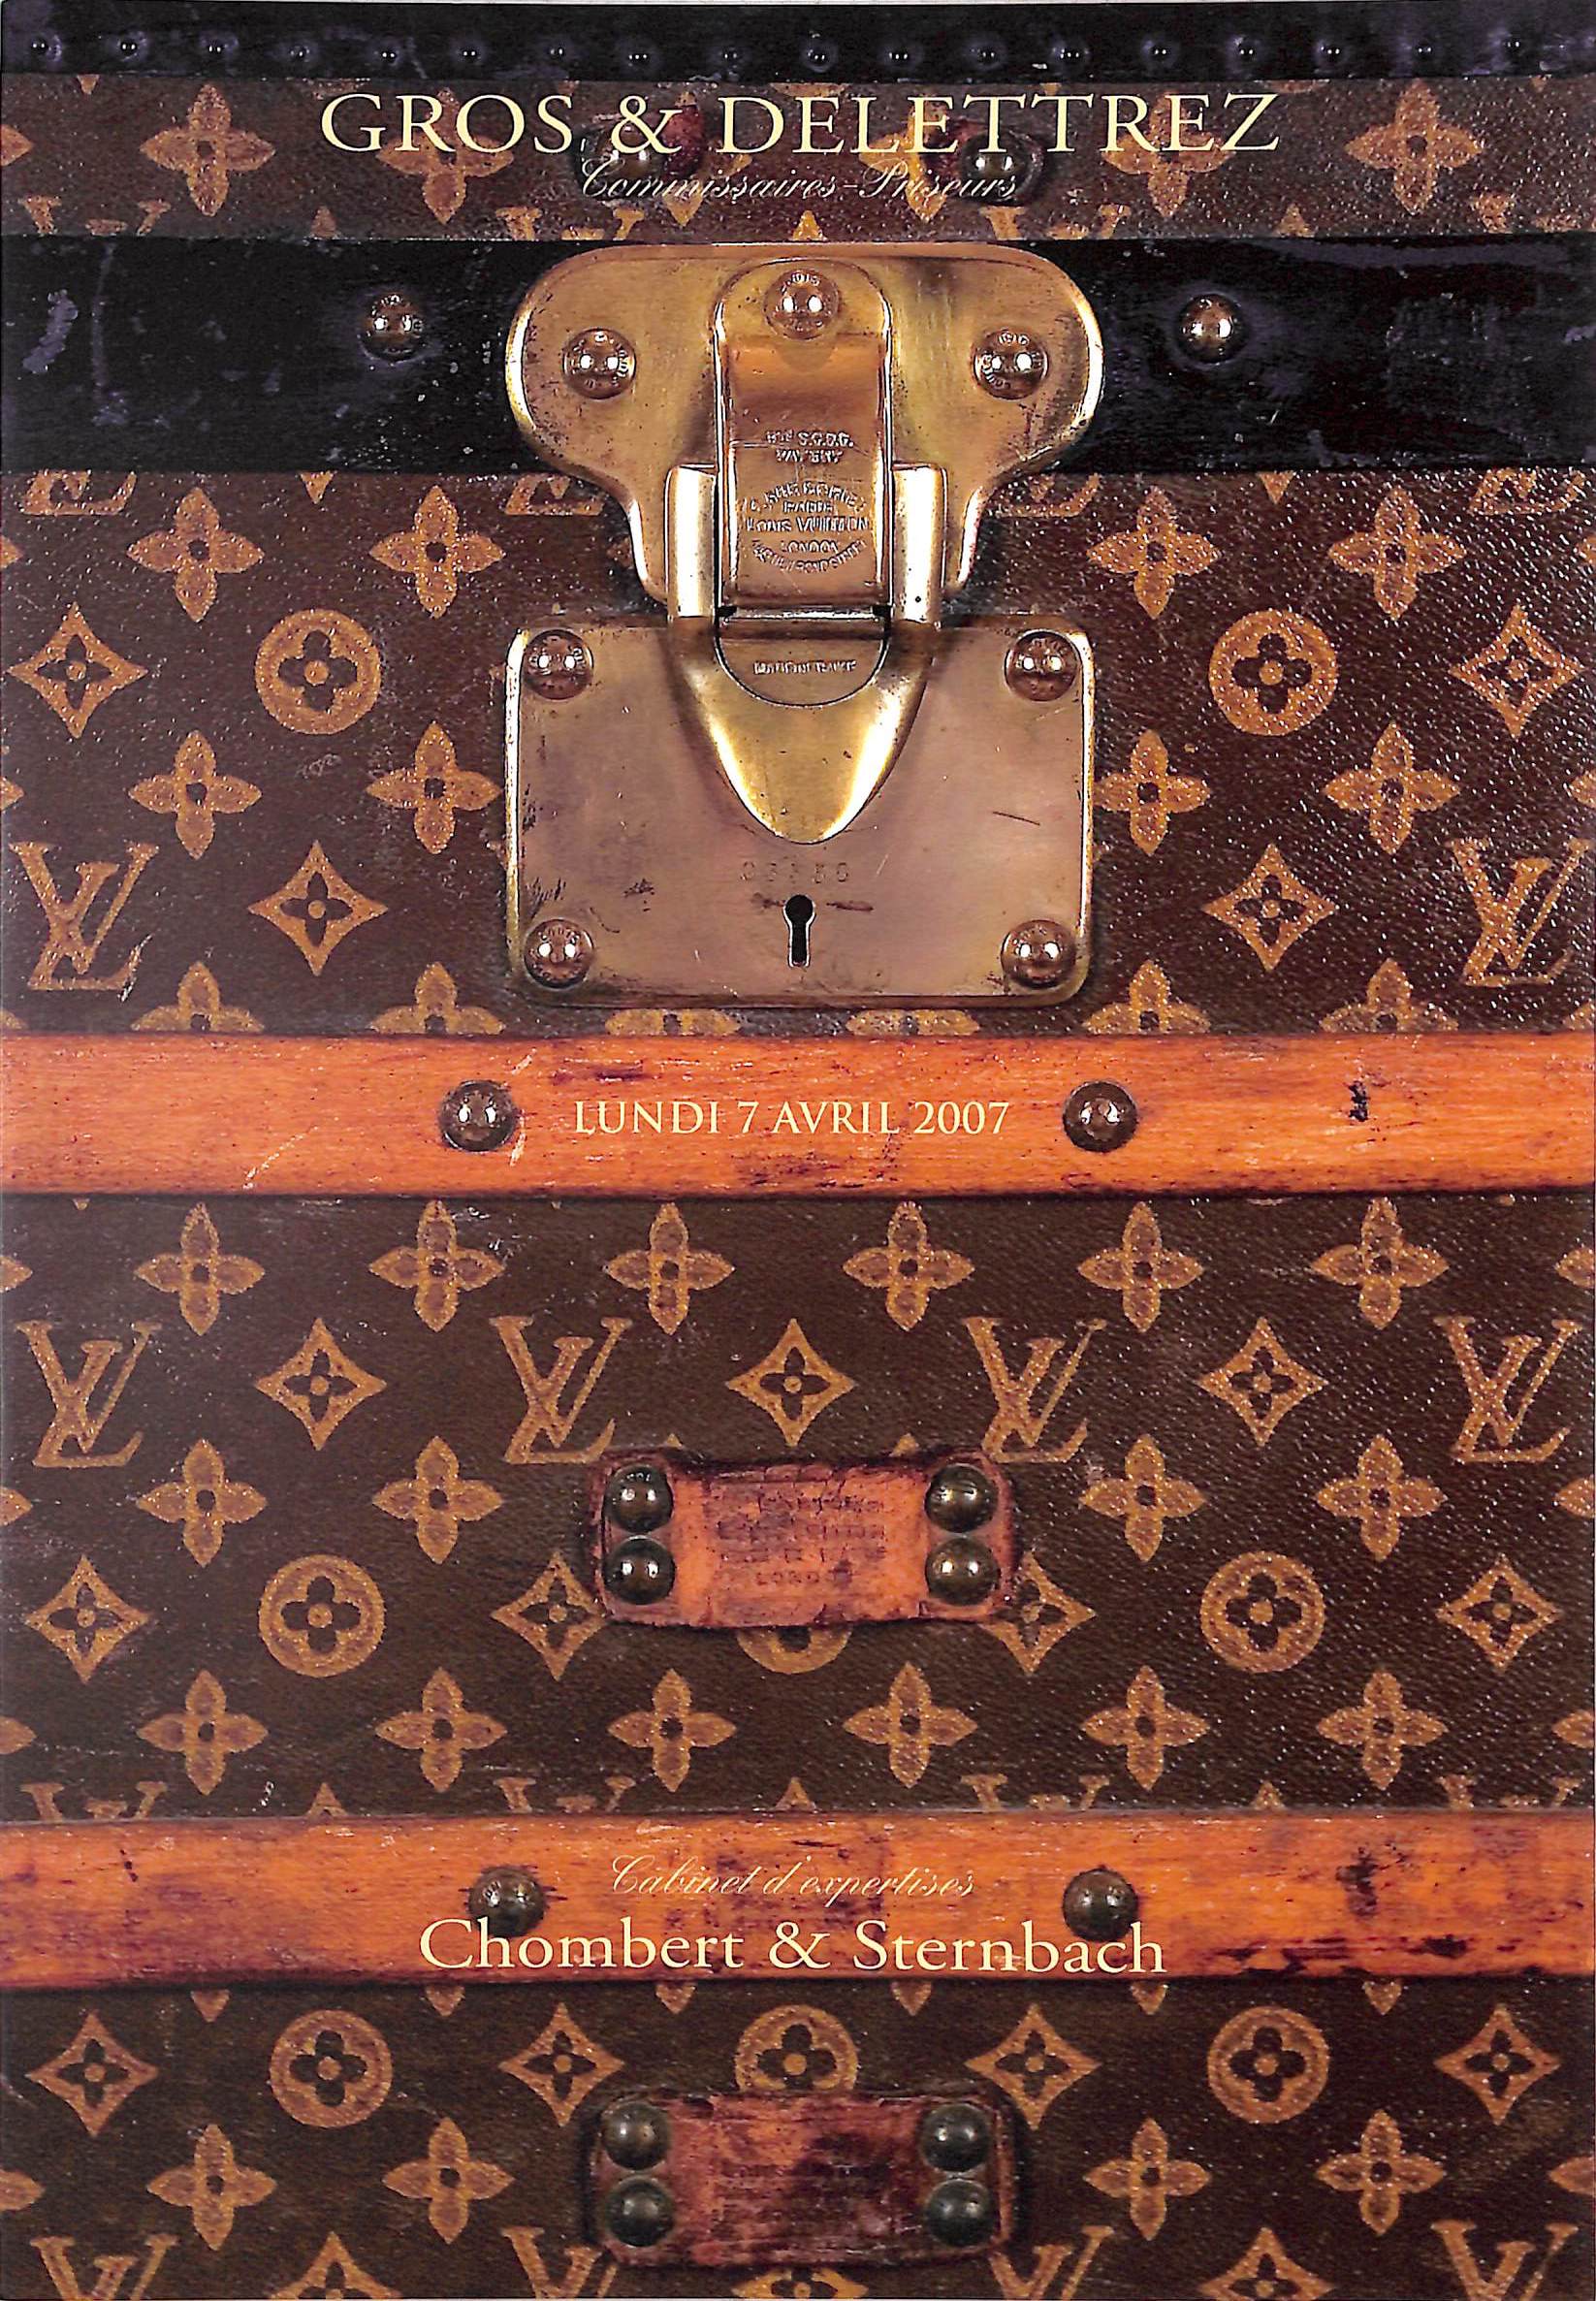 Louis Vuitton. Garment Bag. Auction